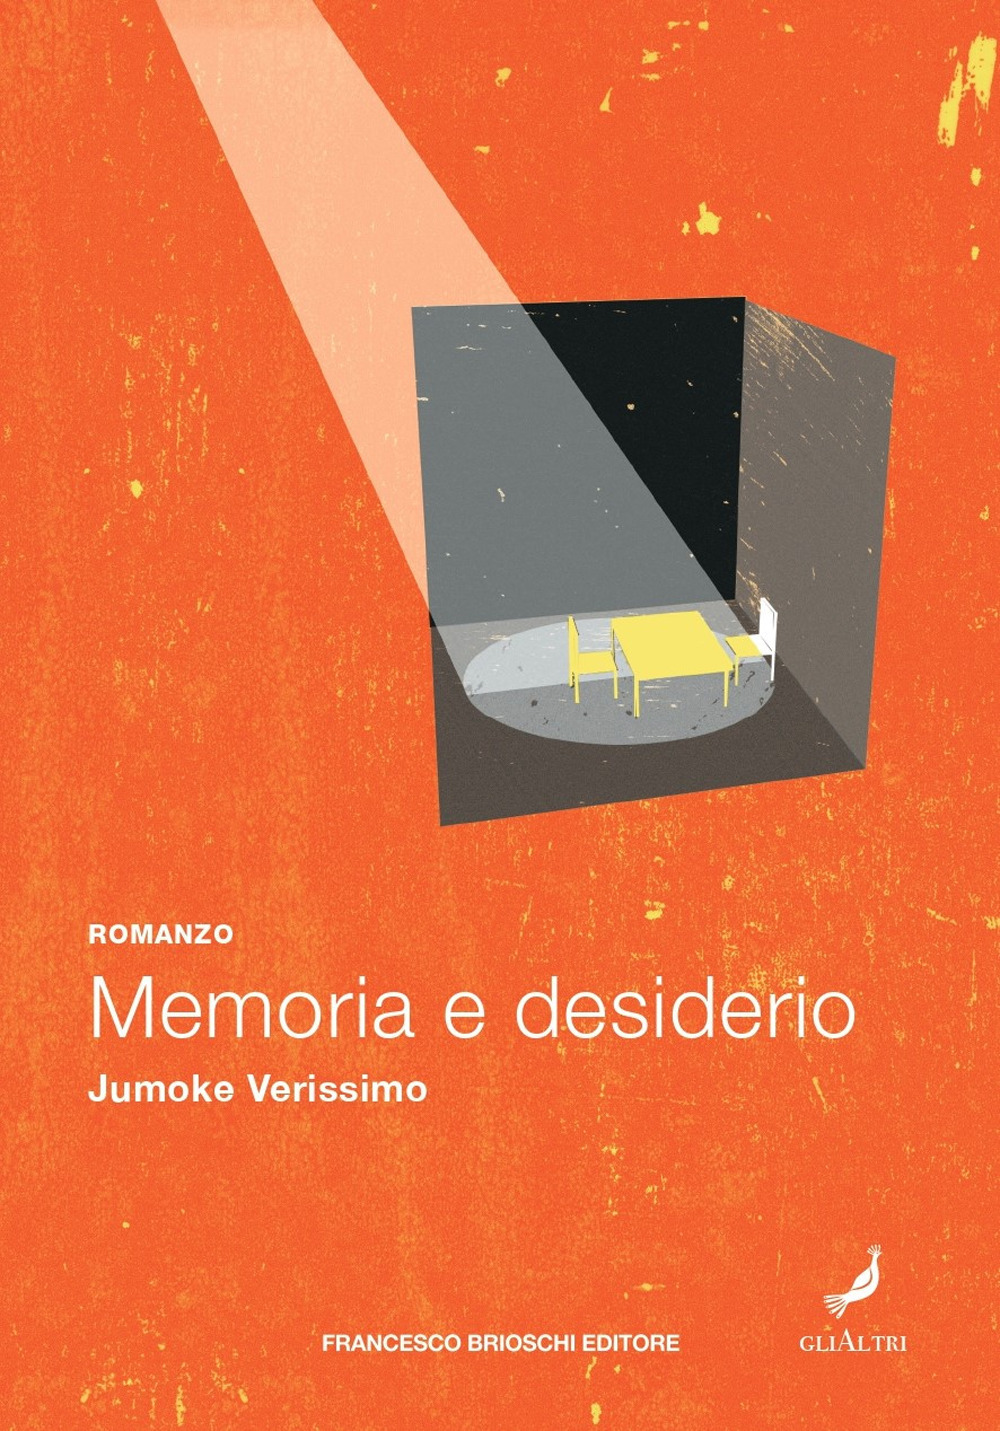 Libri Verissimo Jumoke - Memoria E Desiderio NUOVO SIGILLATO, EDIZIONE DEL 08/04/2021 SUBITO DISPONIBILE